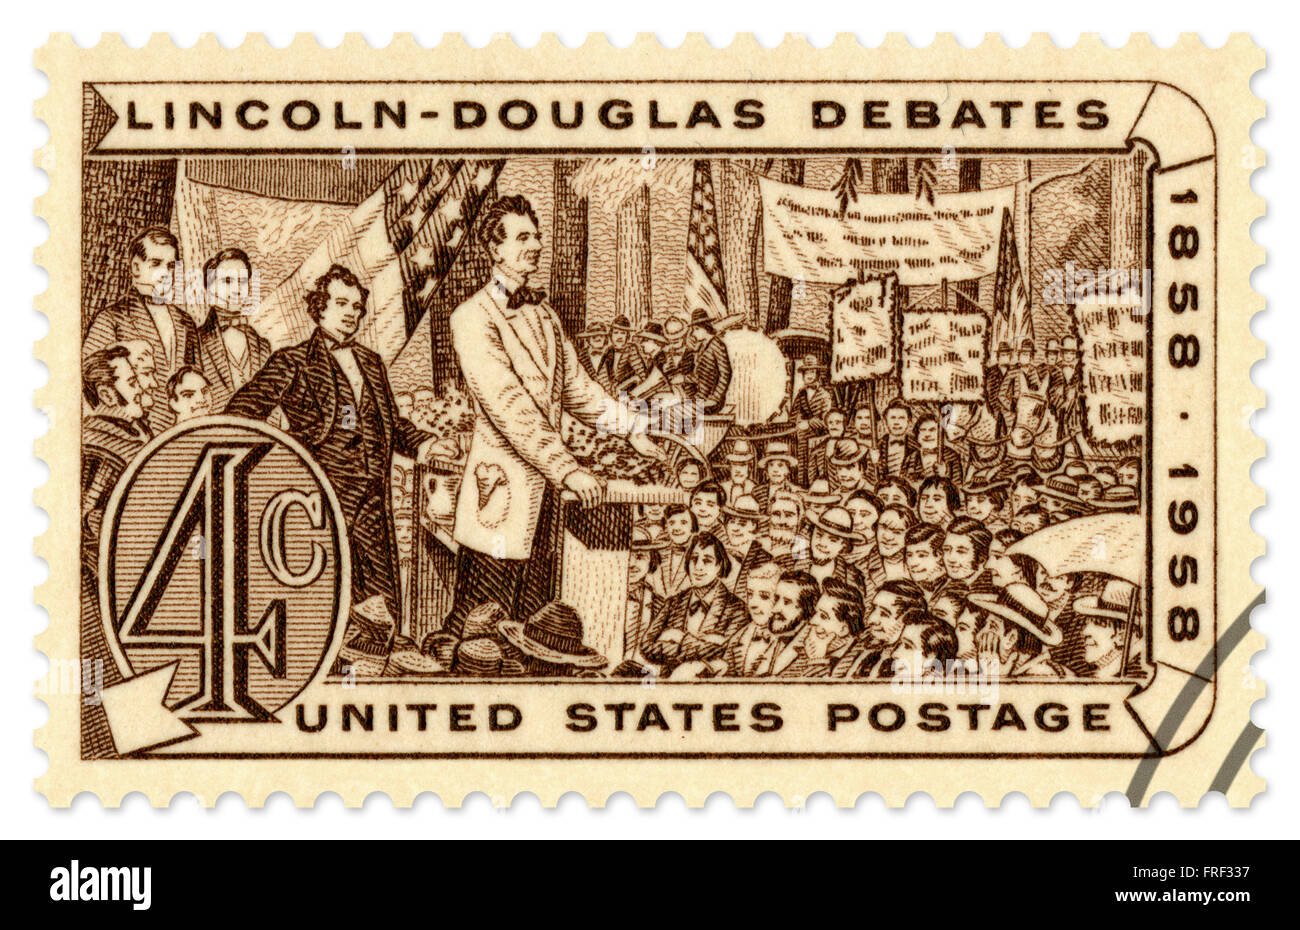 United States commémorative pour le centenaire de la Lincoln Débats 1858-1958 Douglas, publié en 1958 par le Service postal des Etats-Unis. Cette numérisation haute résolution comprend un chemin de détourage. Banque D'Images